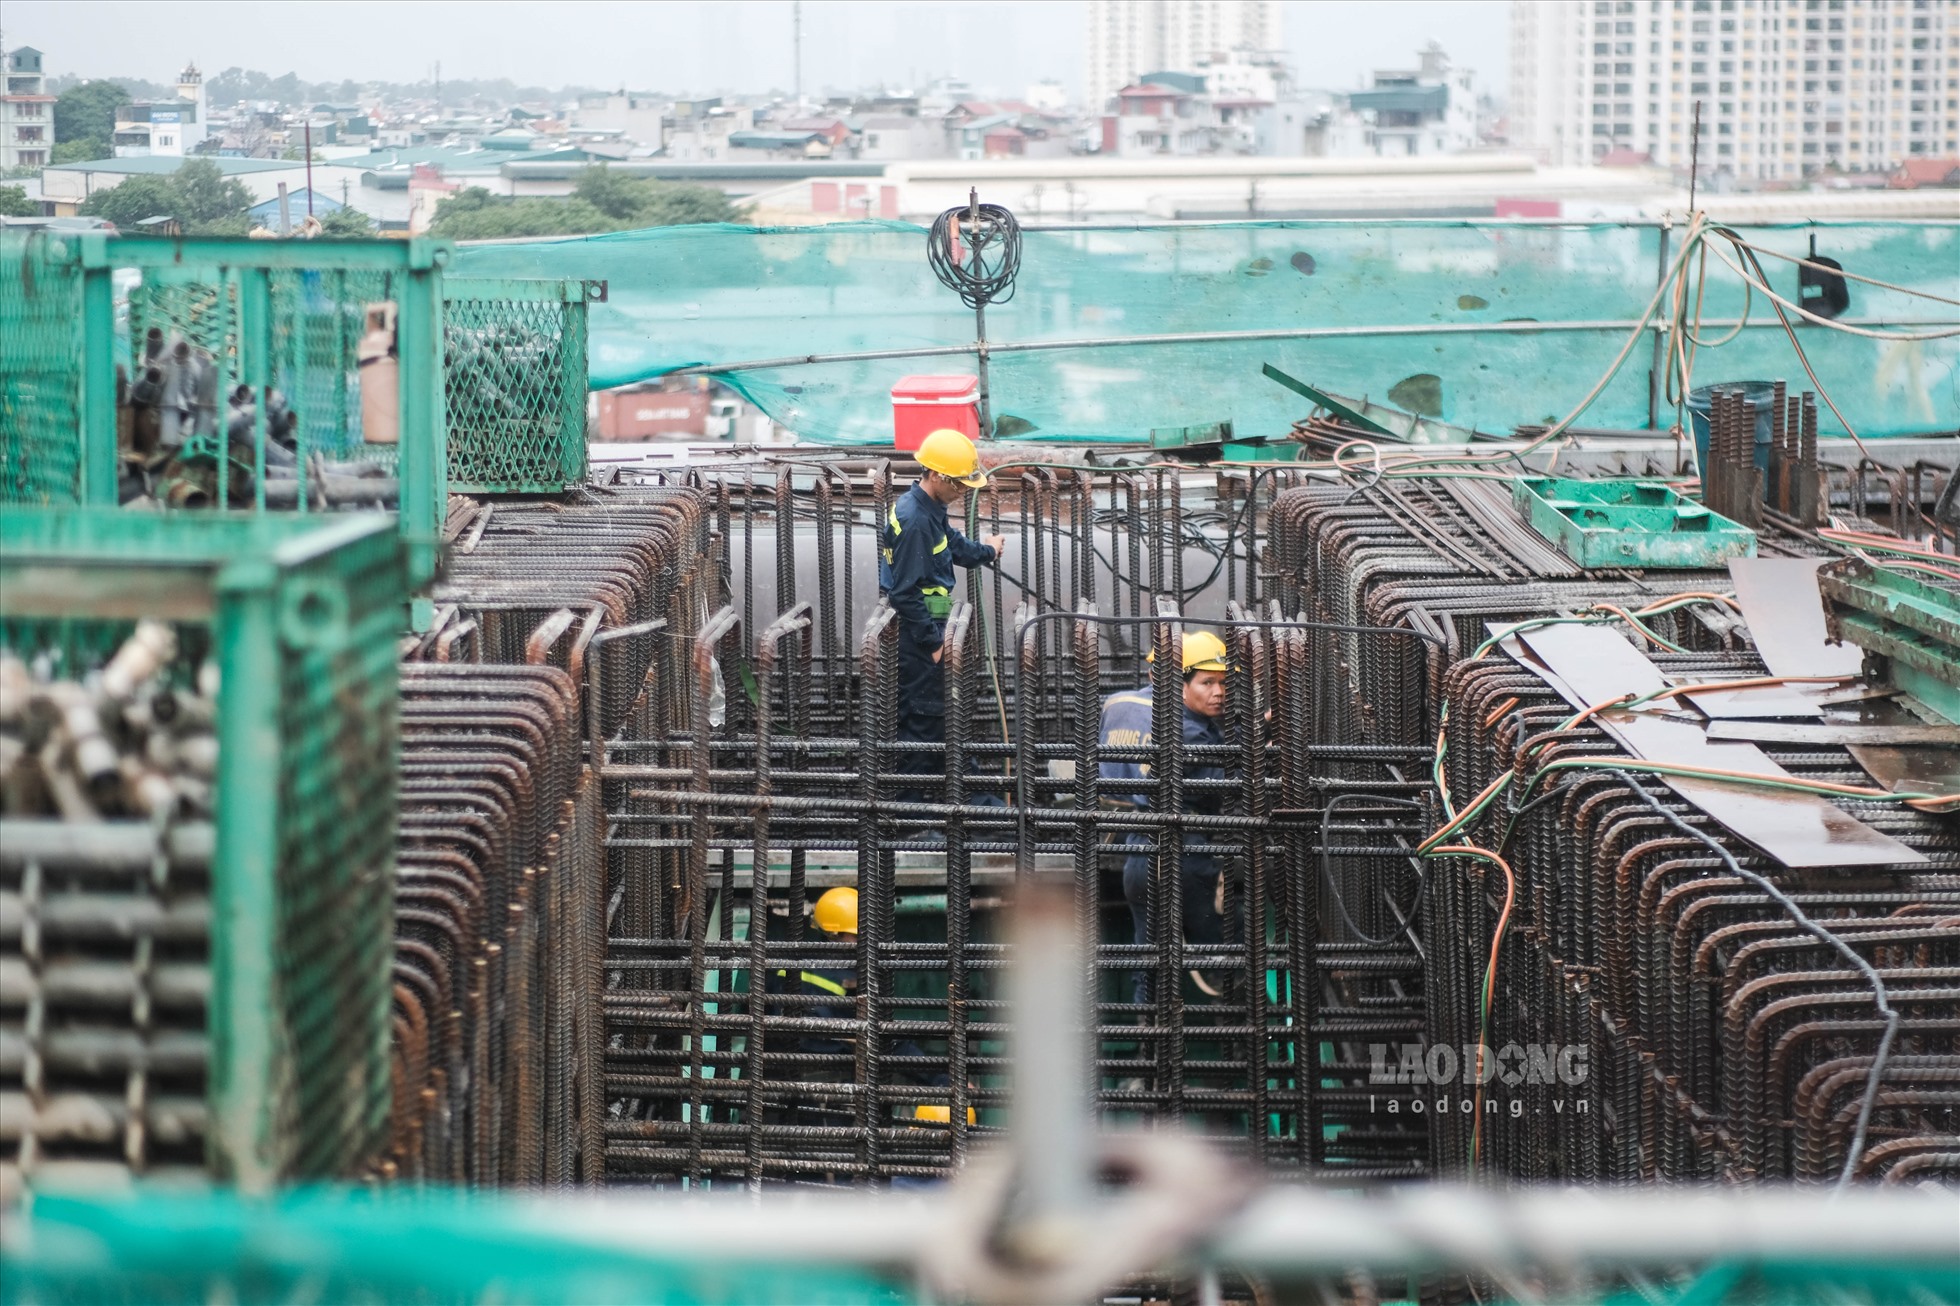 Đại diện Ban quản lý dự án đầu tư các công trình giao thông Thành phố Hà Nội cũng đồng thời cho biết để đáp ứng tiến độ công trường cầu Vĩnh Tuy giai đoạn 2 đang có hơn 500 cán bộ, kỹ sư, công nhân thi công 24/24 giờ.